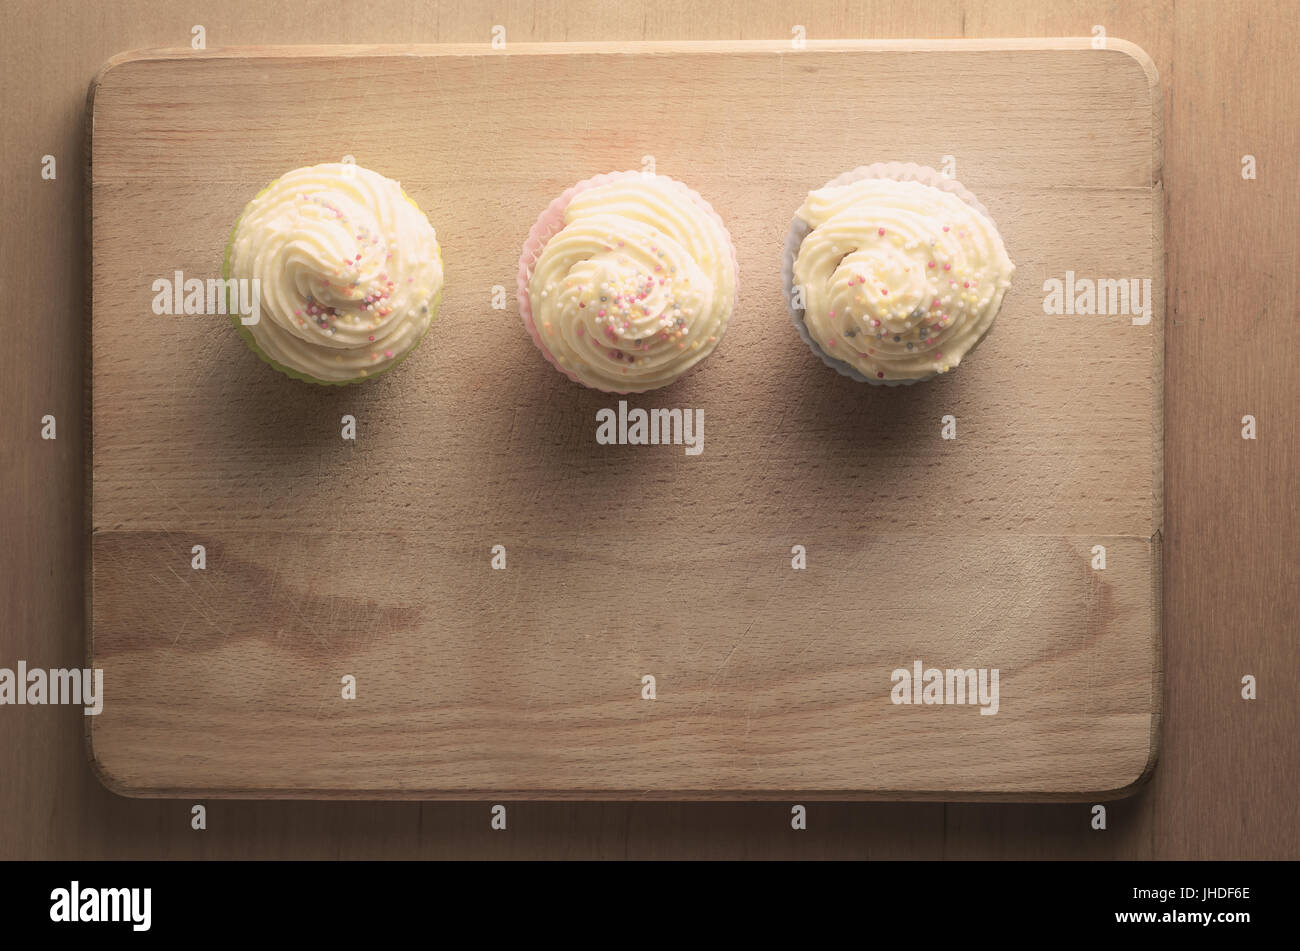 Fotografía cenital de tres pastelitos en una fila en una tabla de cortar de madera, rematada con remolinos de buttercream guinda y coloridos sprinkles. Tonos retro. Foto de stock